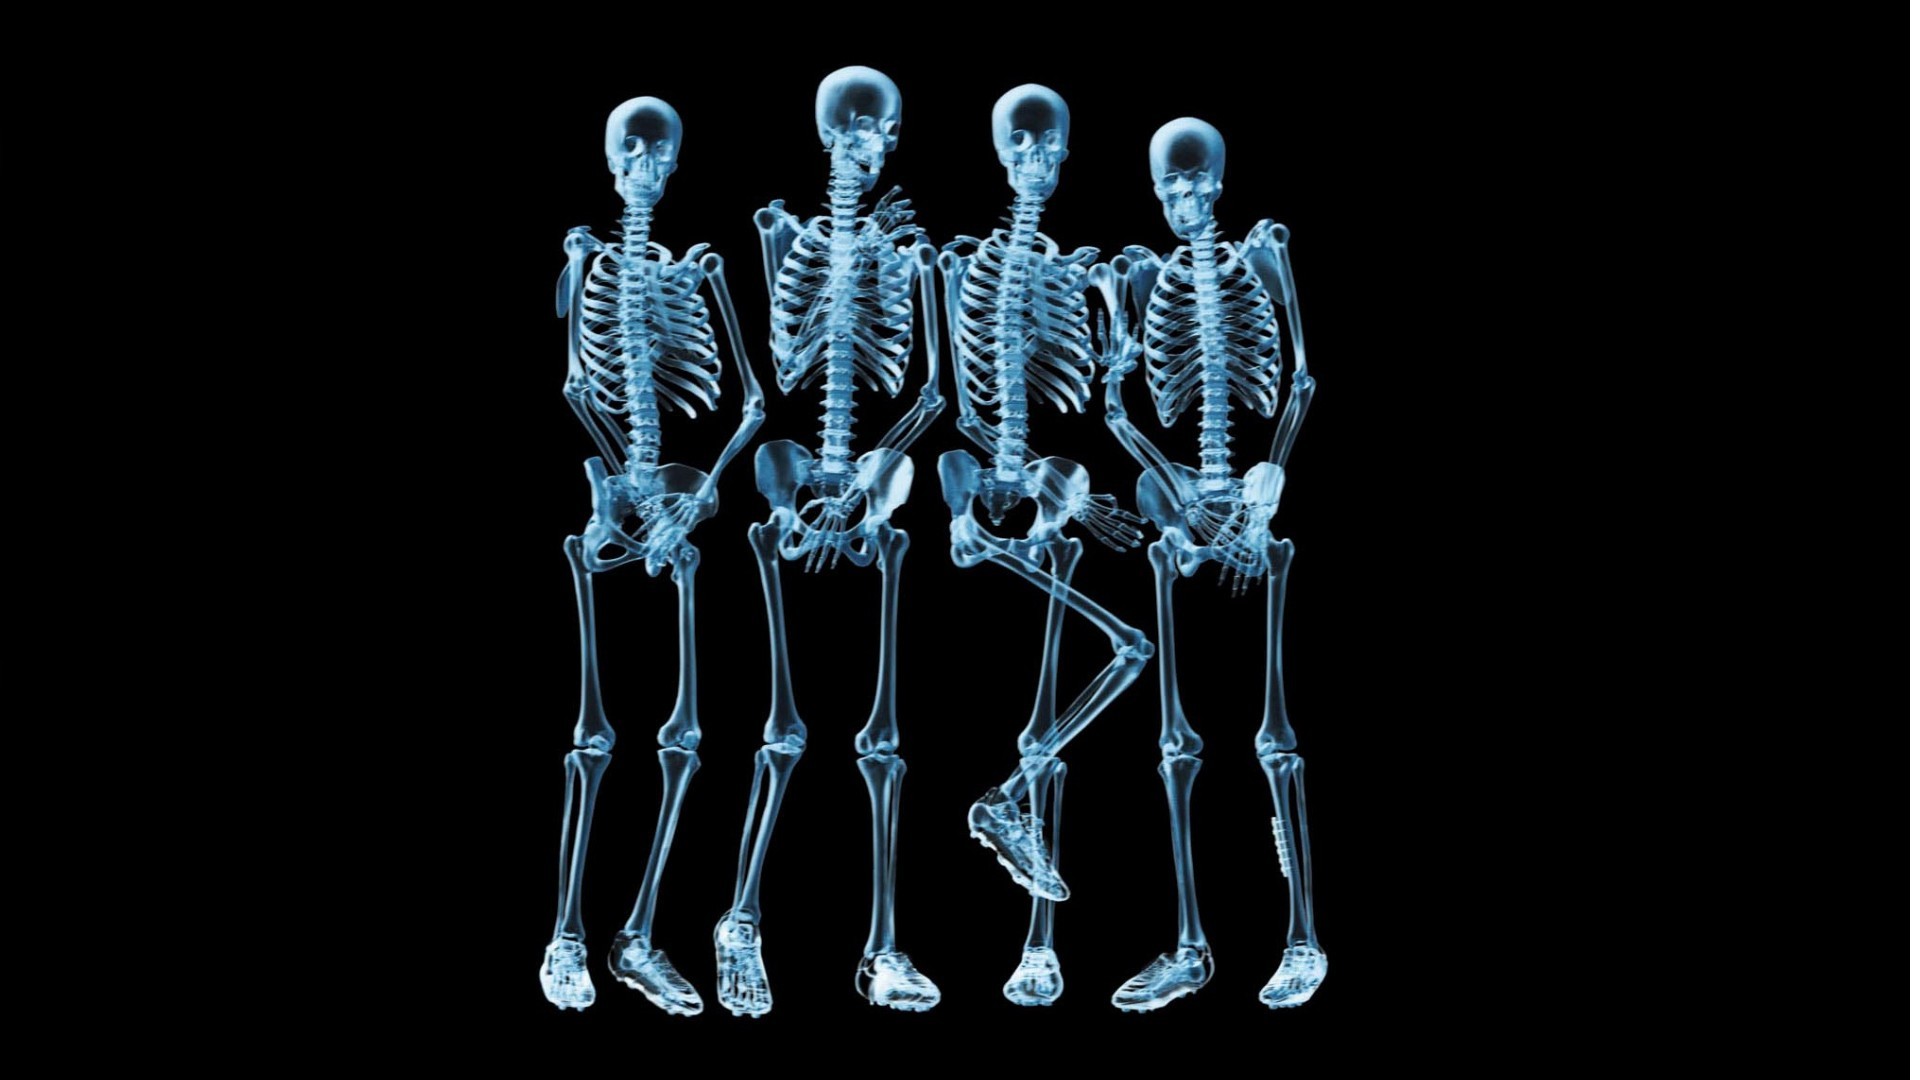 Abstract Xray Walking Human Skeleton Dark iPhone 8 Wallpapers Free Download